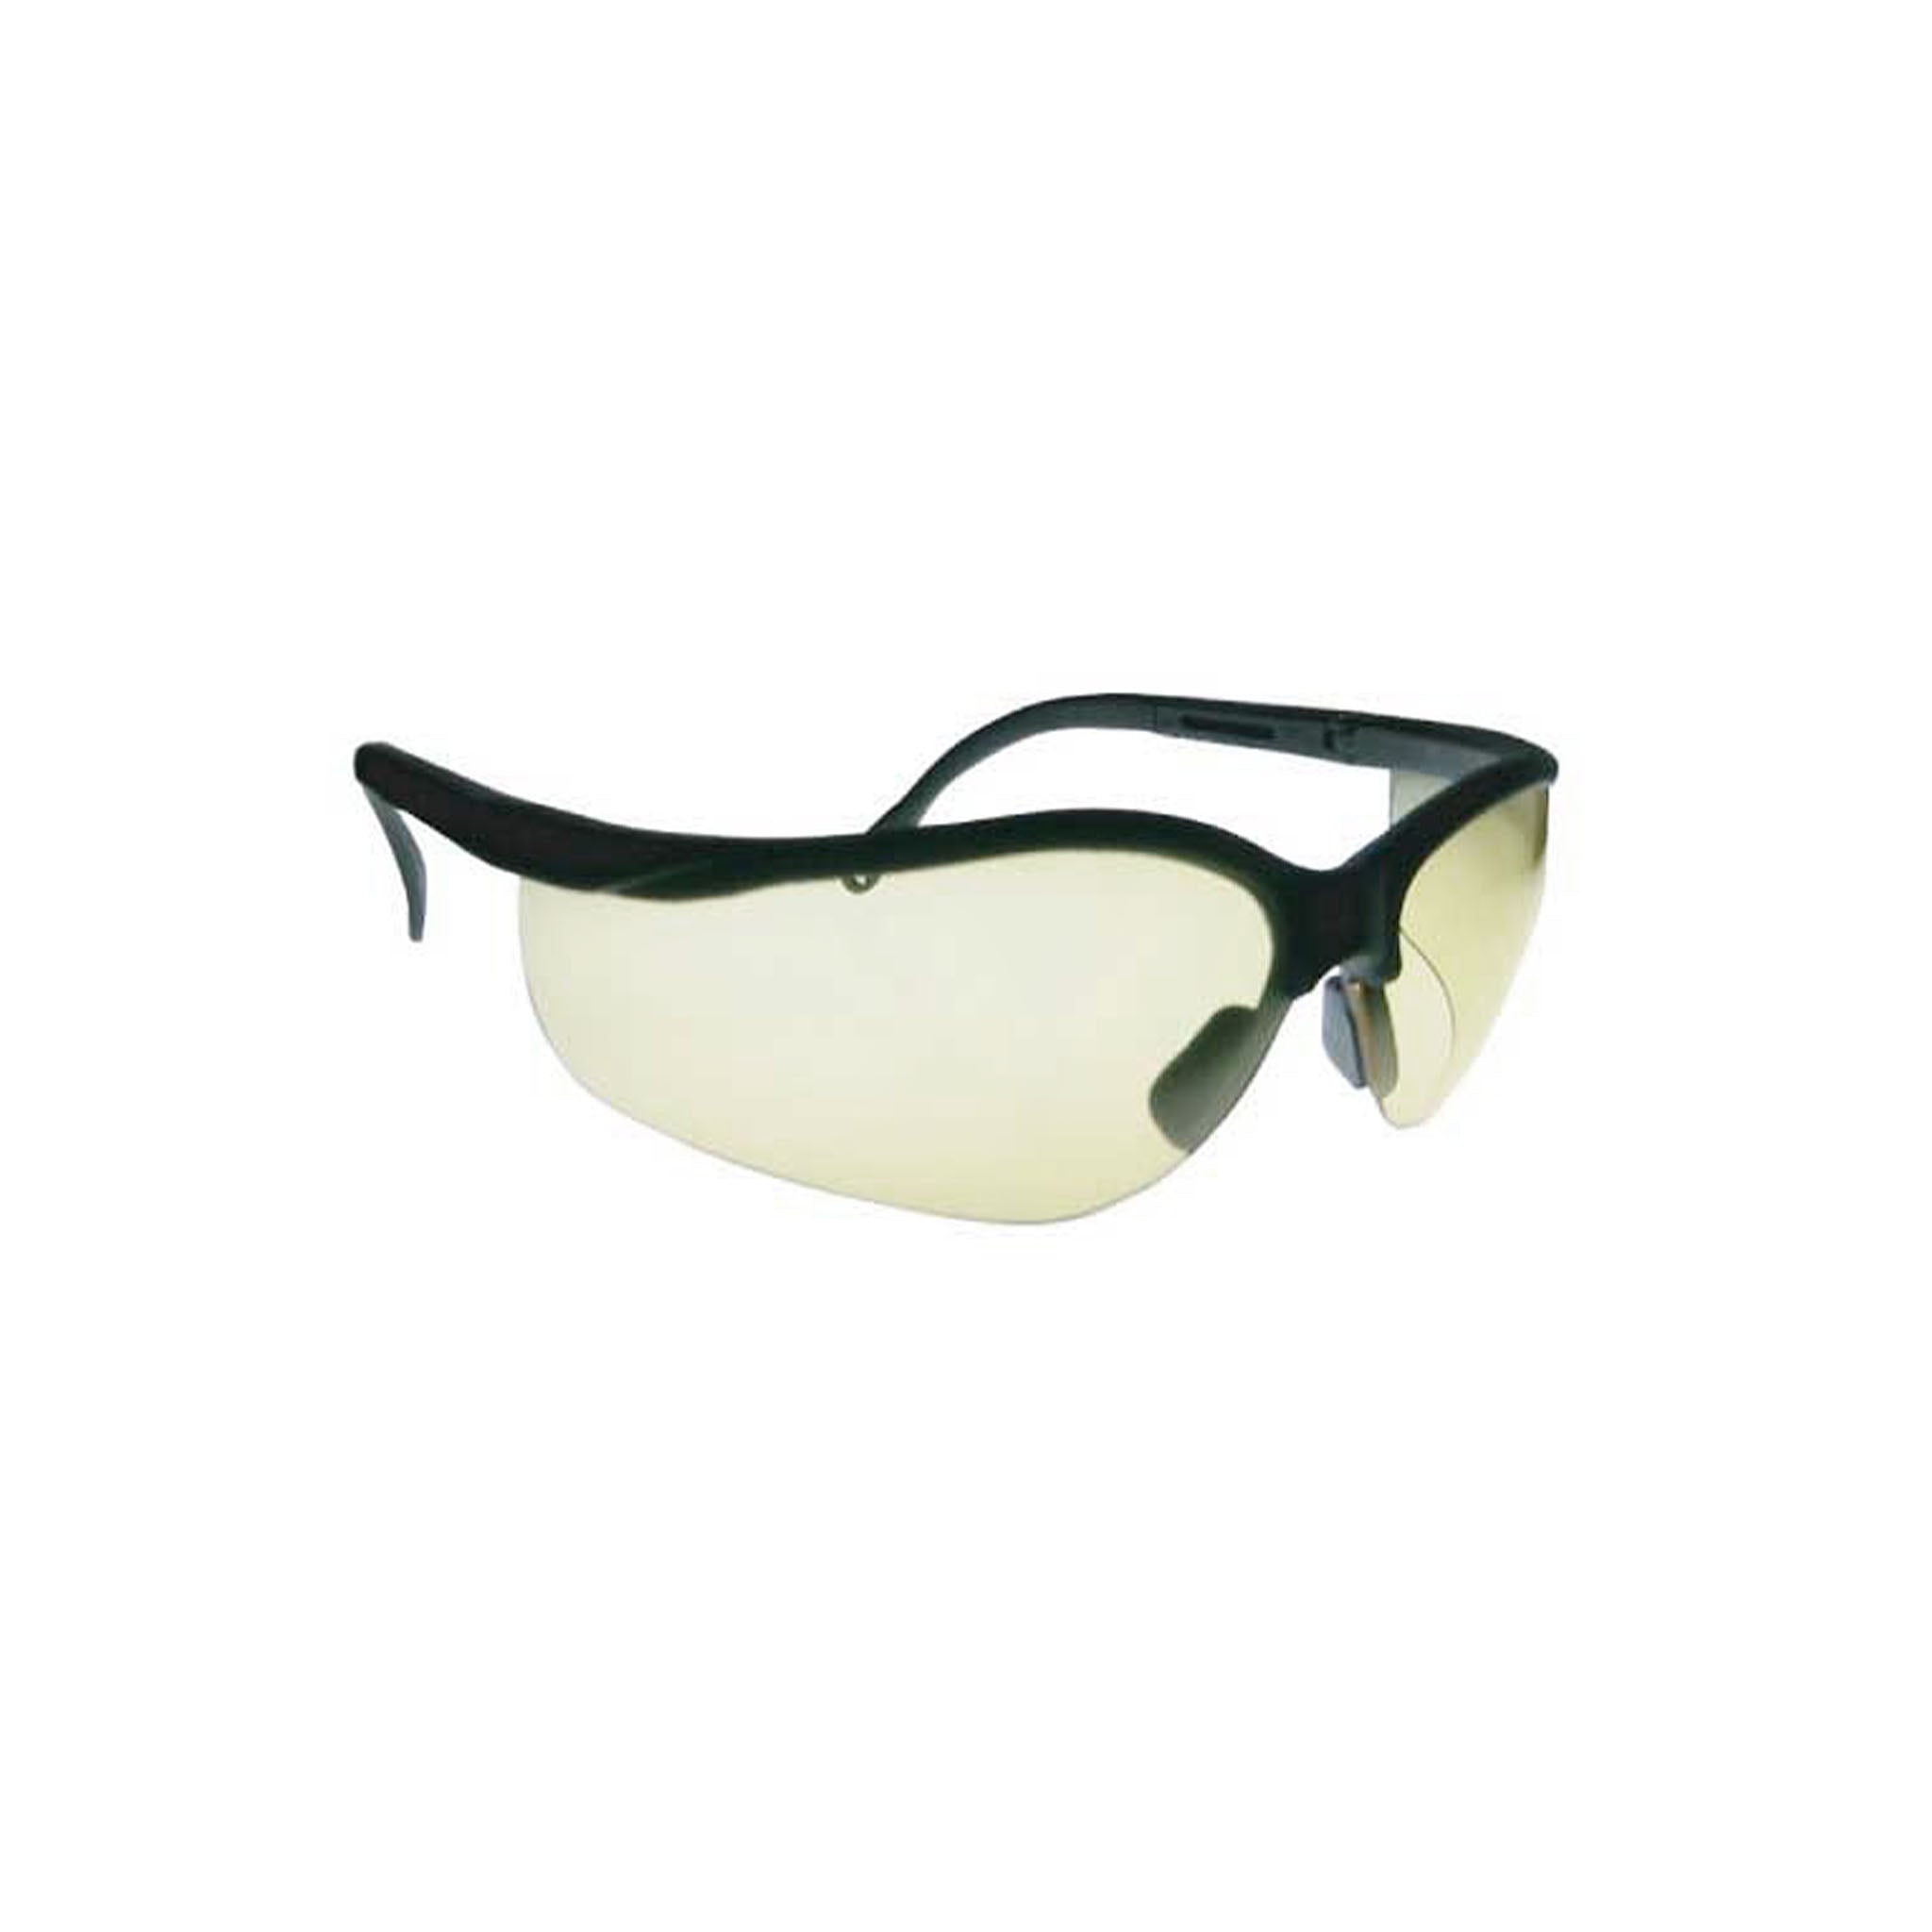 Slicks Safety Glasses, Gray Frame, Gray Lens, Anti-Fog